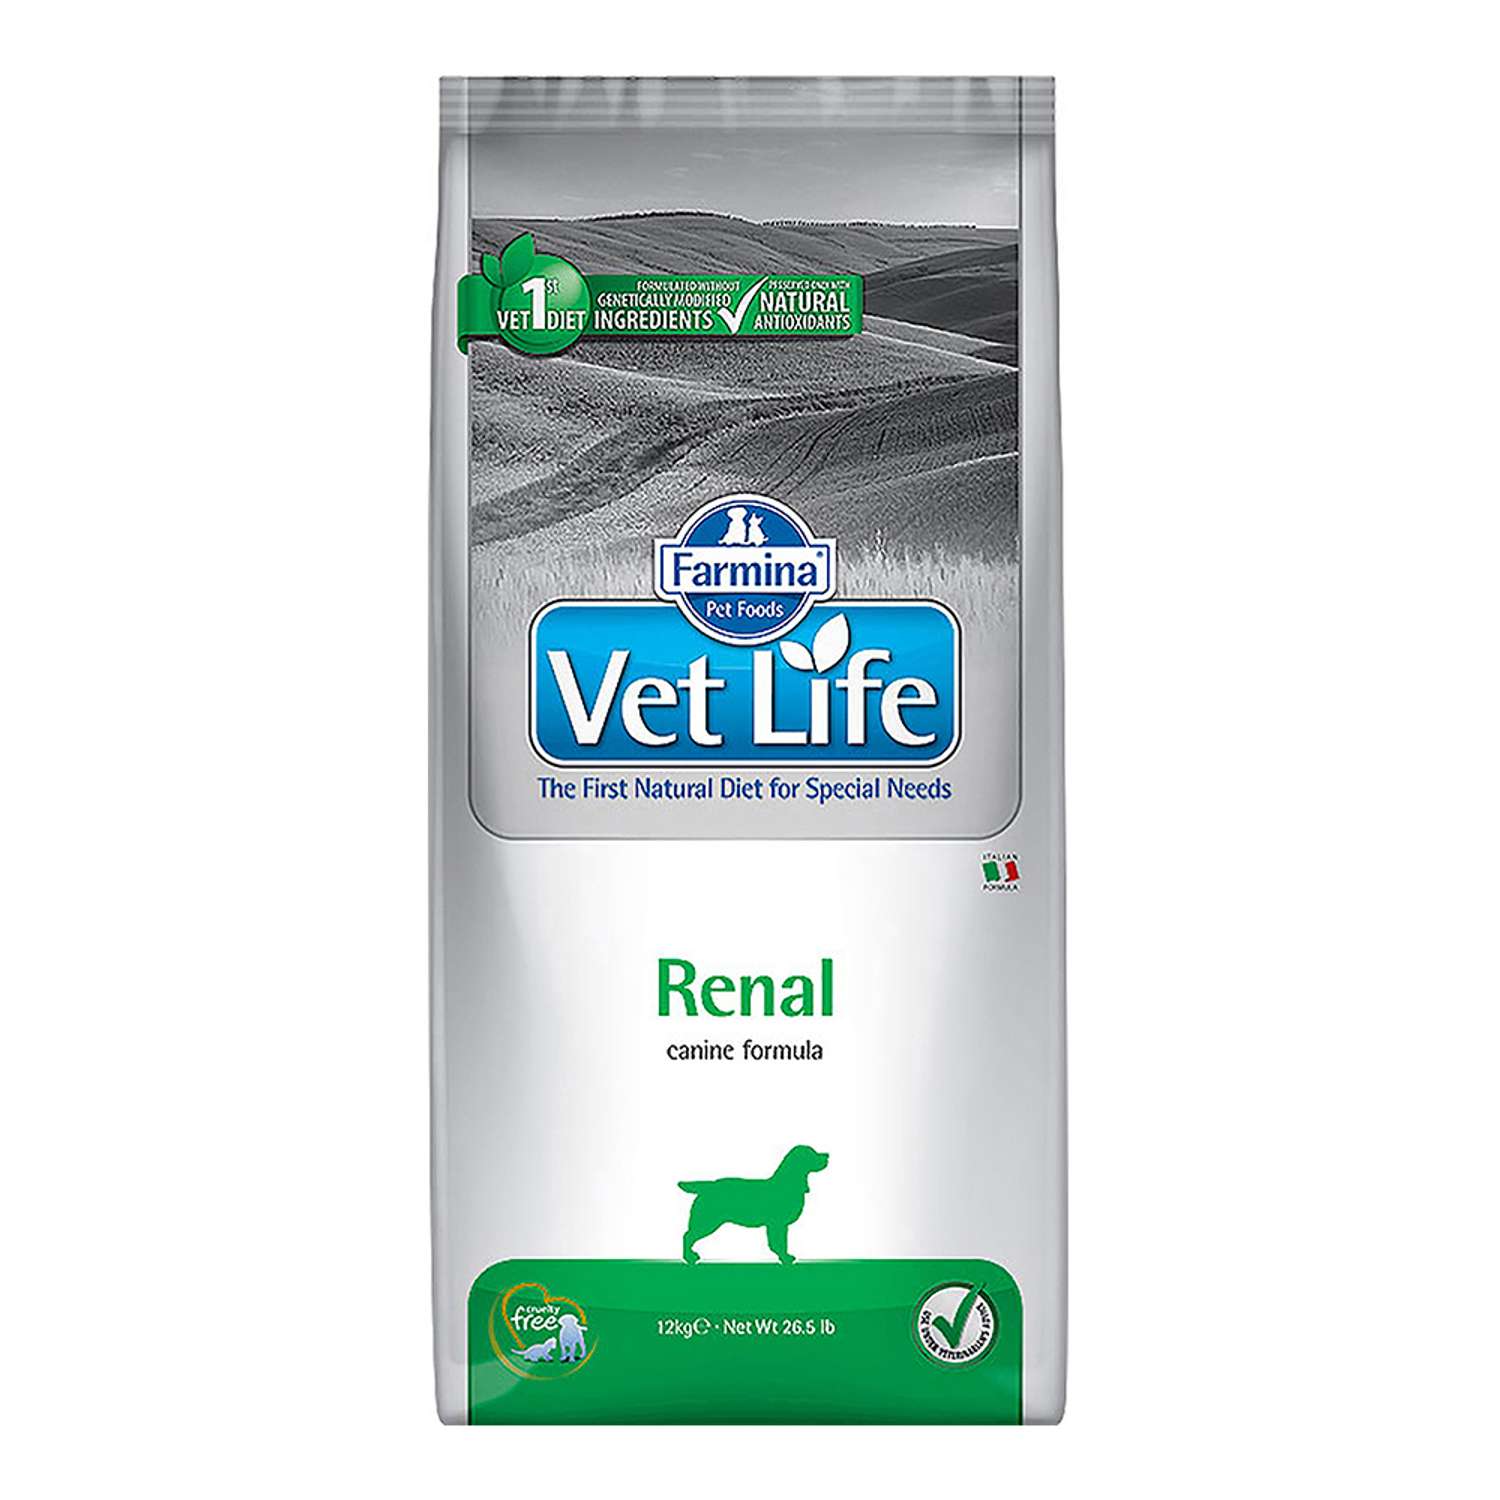 Vet life для котов. Фармина корм для кошек vet Life. Vet Life корм renal для собак. Farmina vet Life hepatic для собак. Farmina vet Life Struvite для кошек 2.